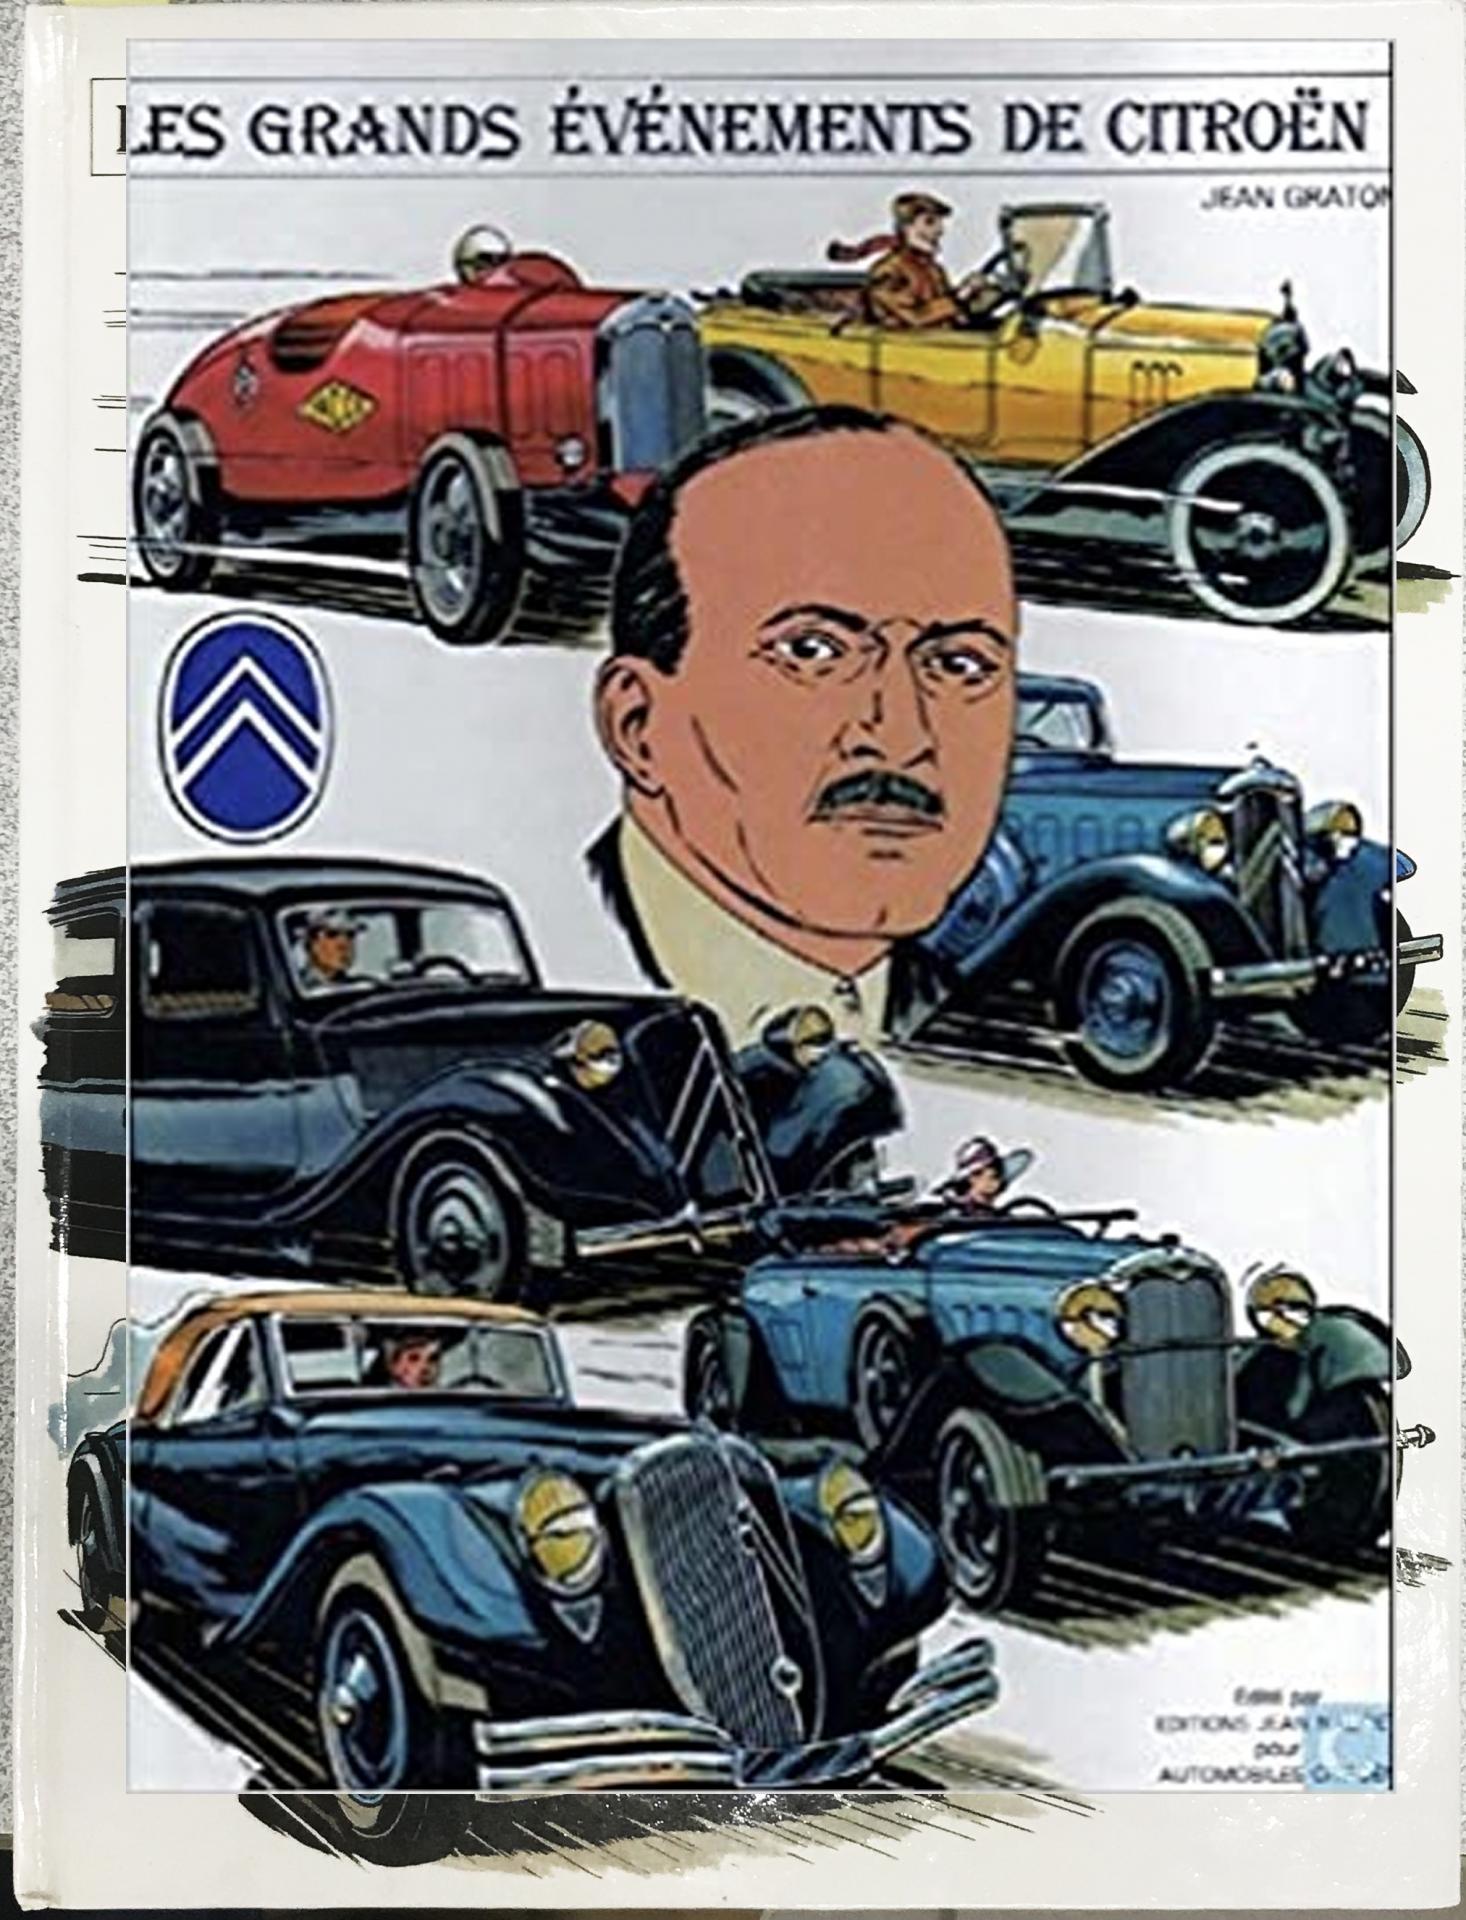 1981 Les grands événements Citroën